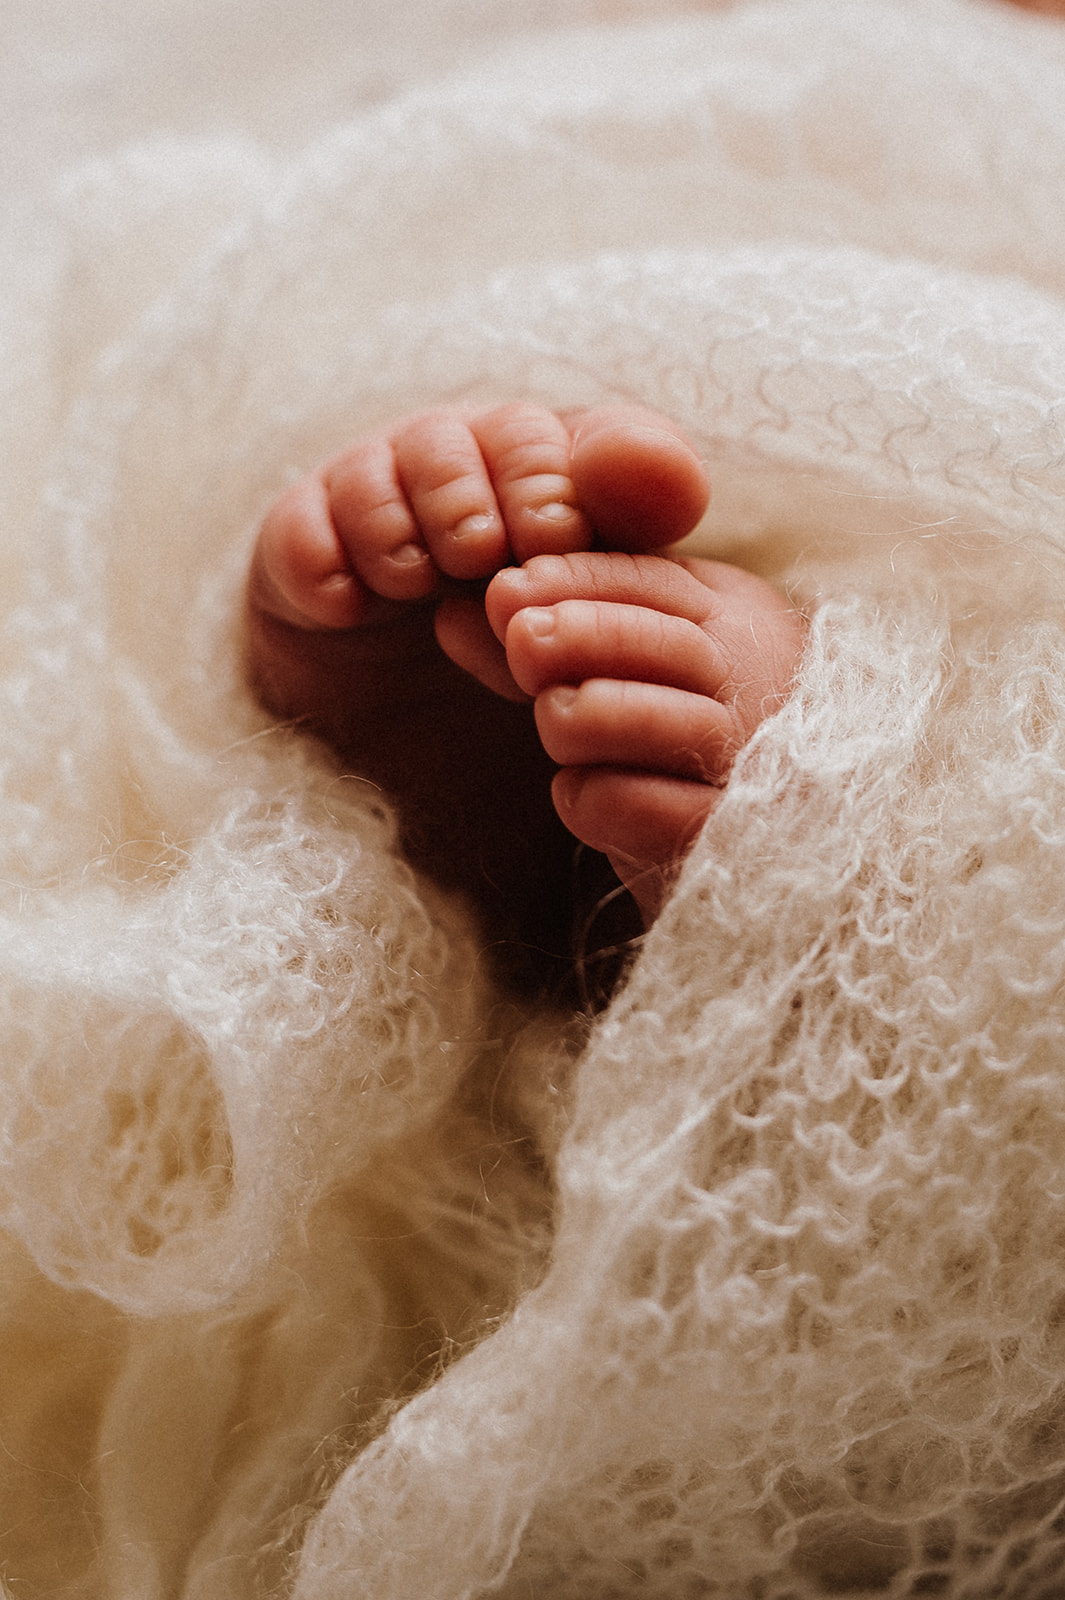 pies de bebe recién nacido